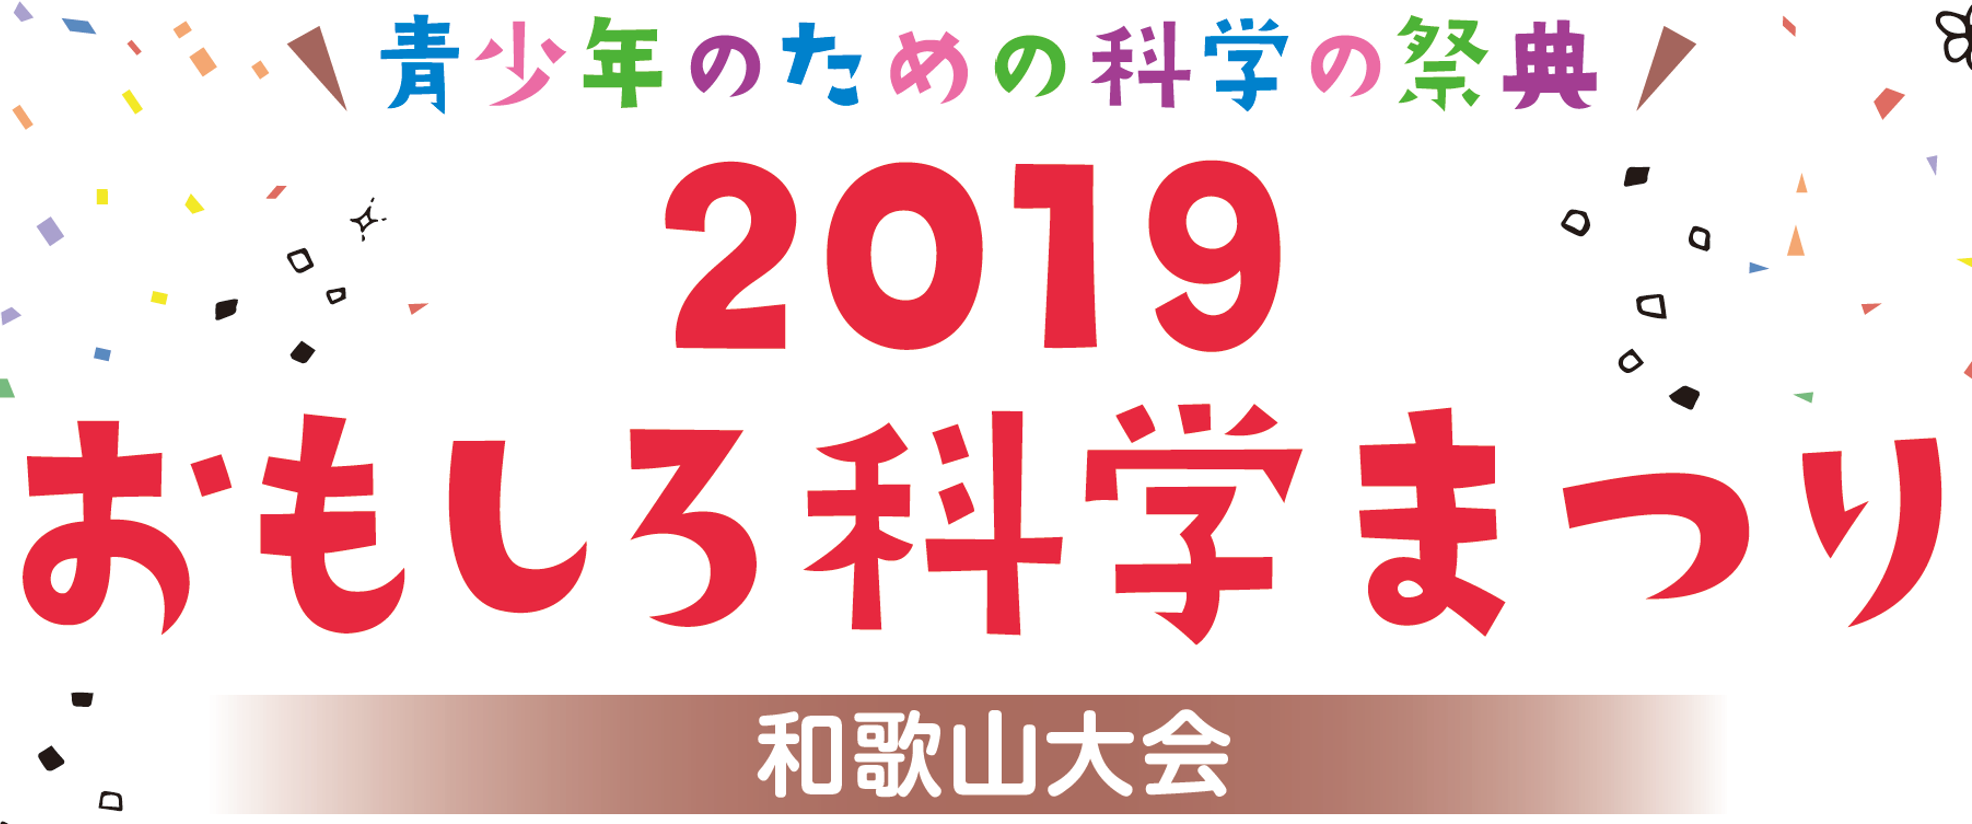 青少年のための科学の祭典 ー 2018 おもしろ科学まつり ー 和歌山大会